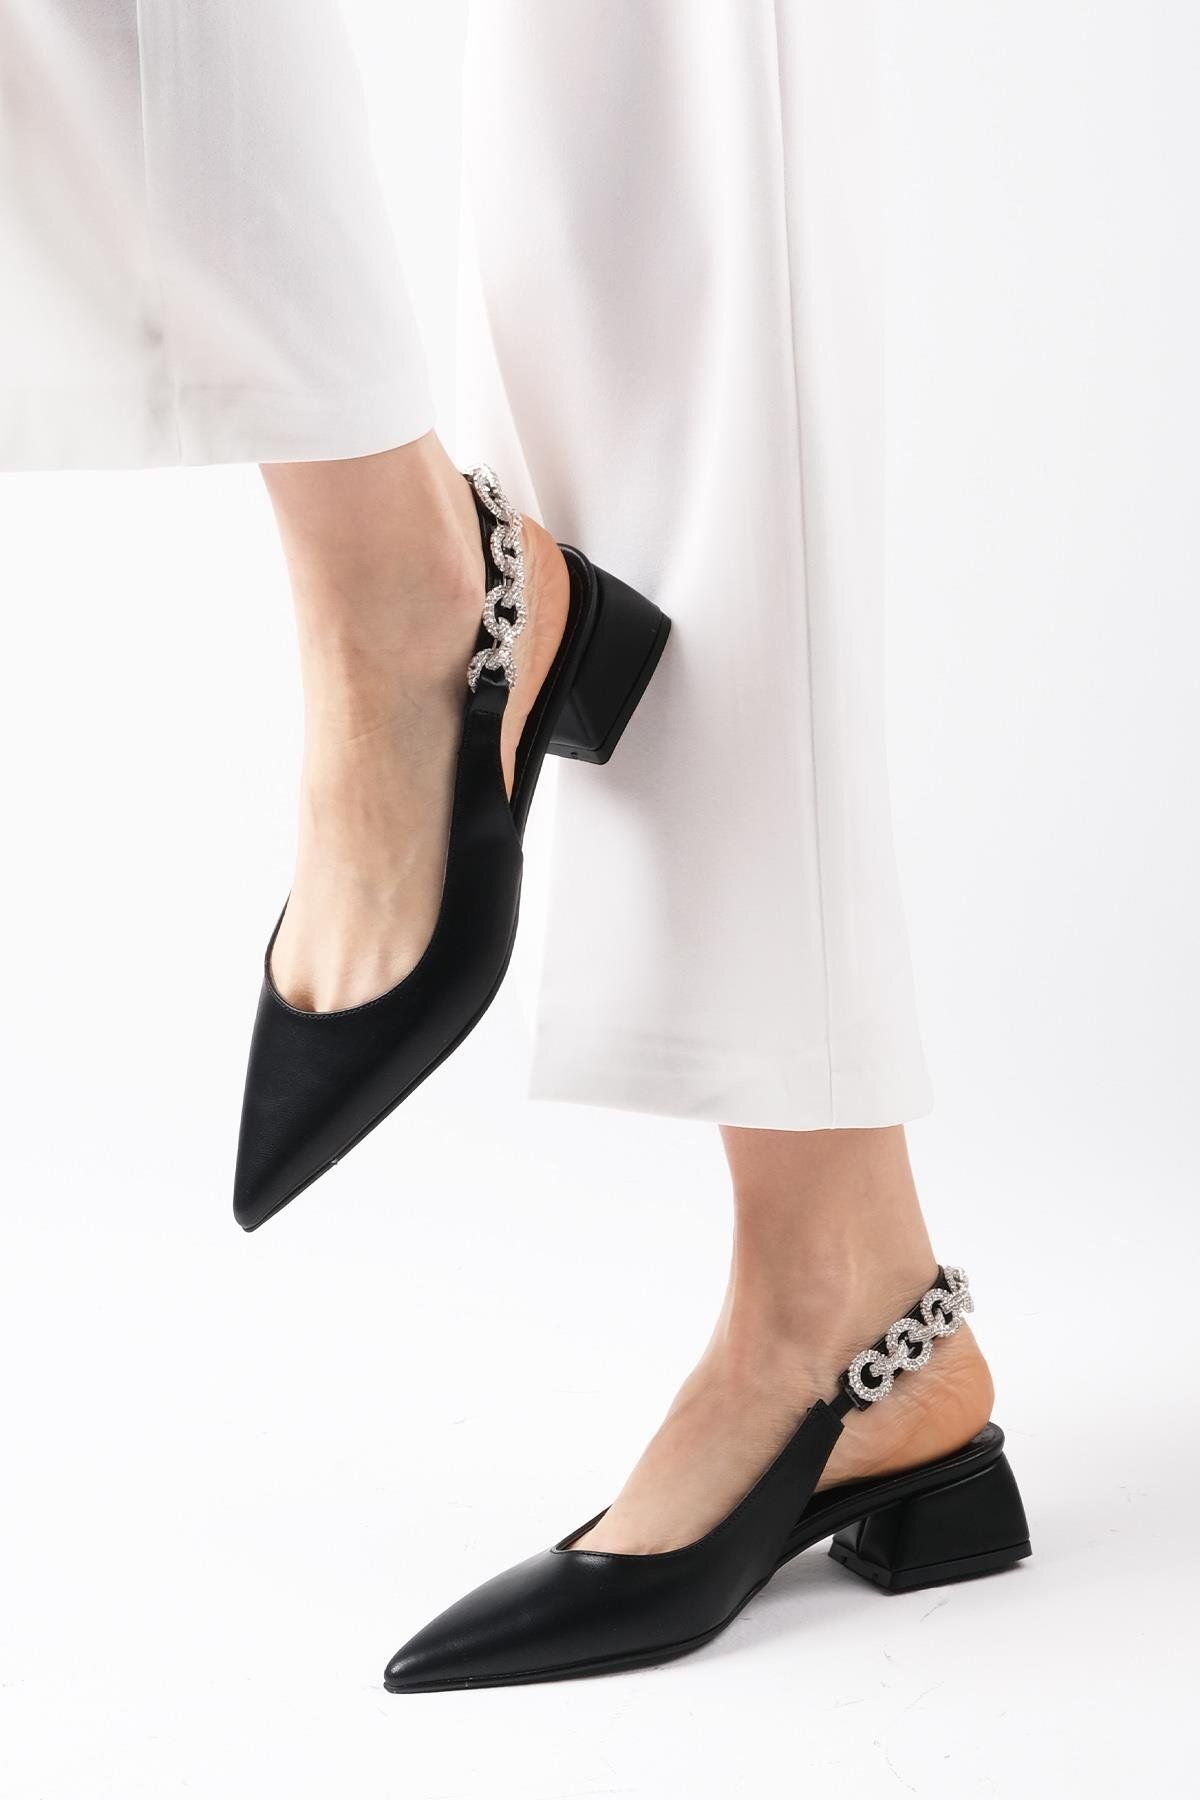 Mio Gusto Sophie Siyah Renk Arkası Açık Taş Bantlı Kadın Kısa Topuklu Ayakkabı